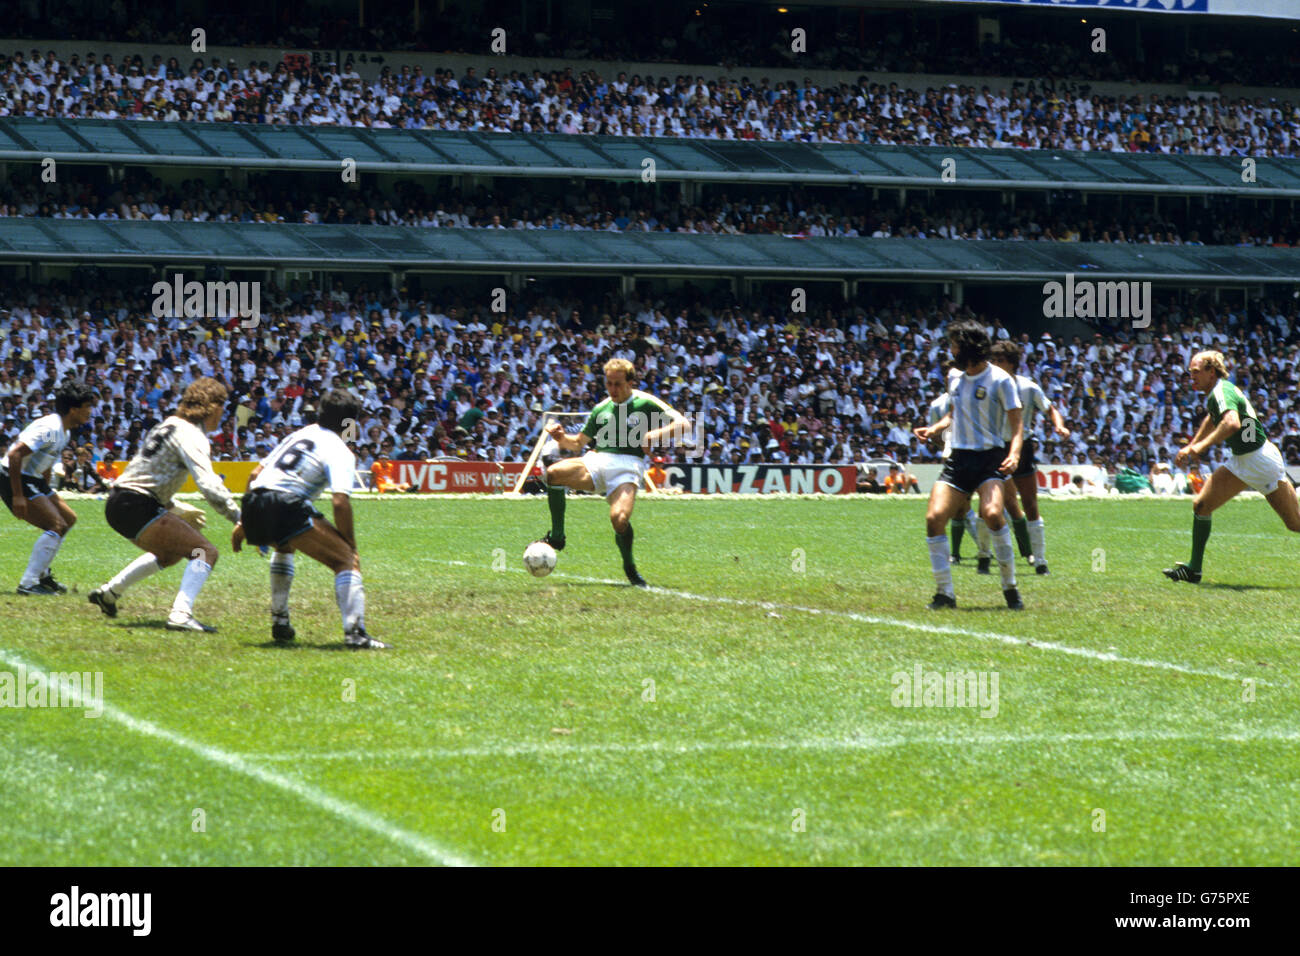 Calcio - Coppa del mondo FIFA 1986 - finale - Argentina / Germania Ovest - Stadio Azteca, Messico. Karl-Heinz Rummenigge segna per la Germania occidentale. Foto Stock